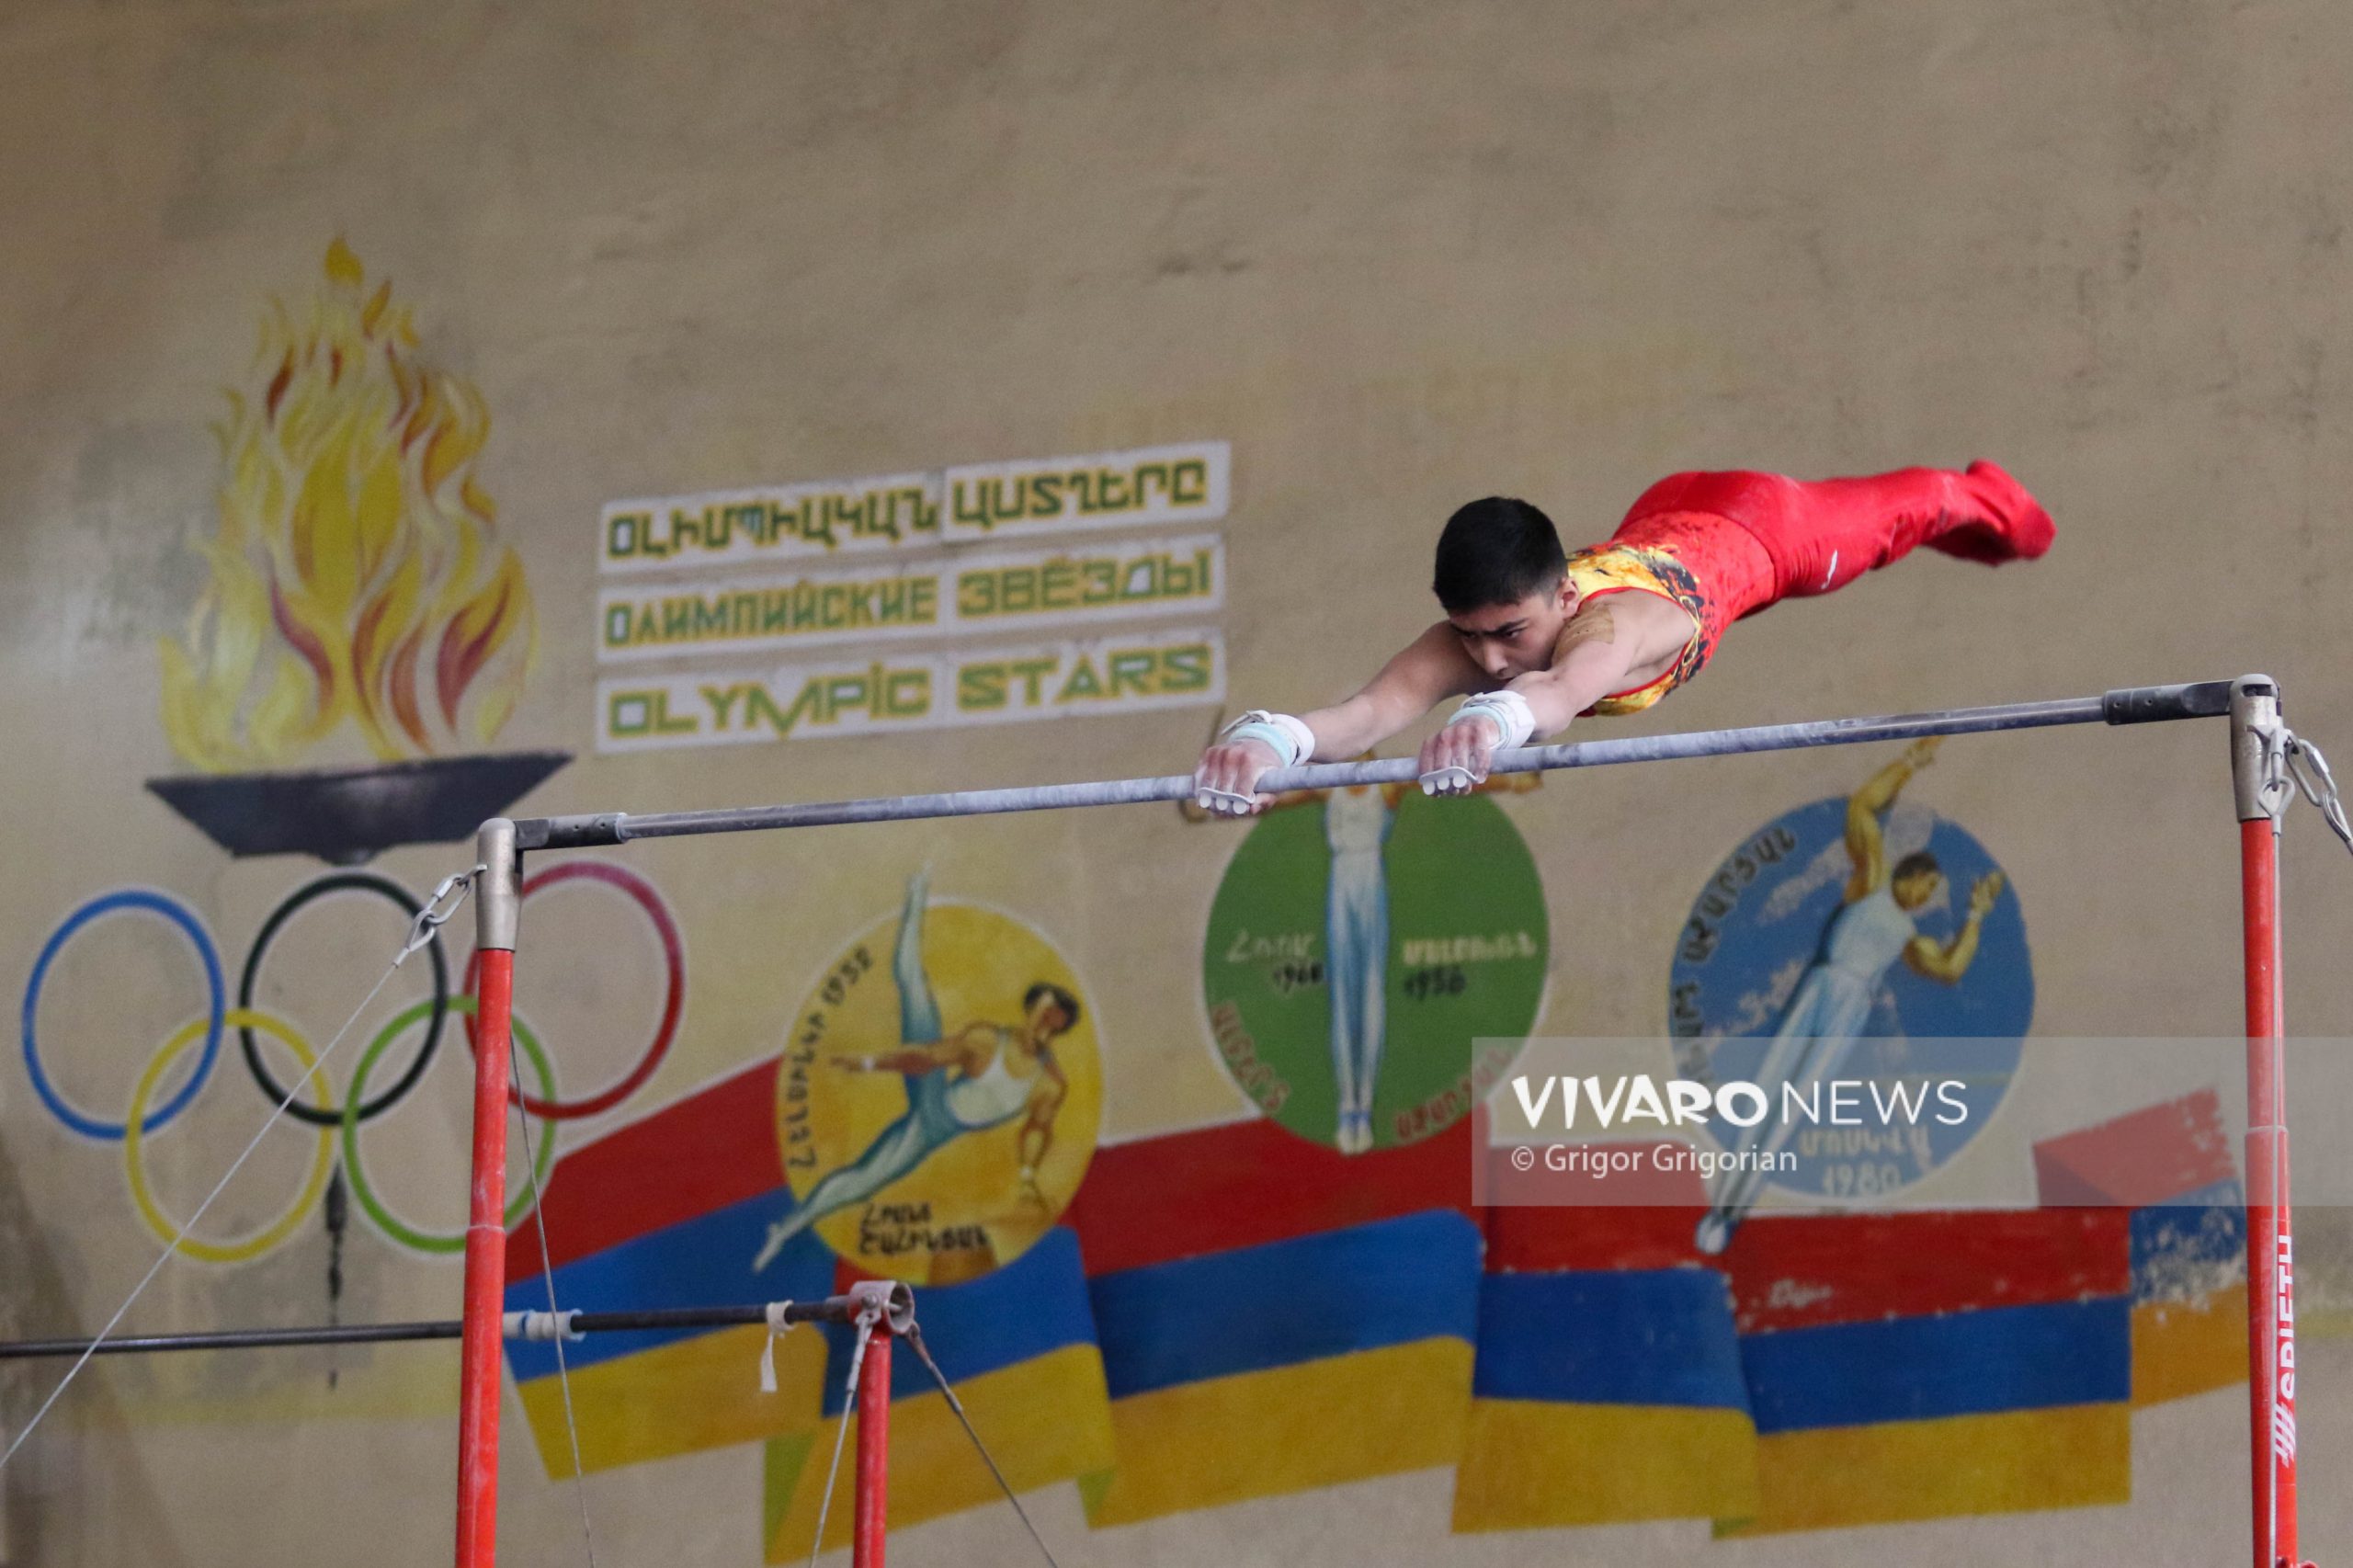 045A4512 scaled - Մարմնամարզության Հայաստանի առաջնության մրցումային երկրորդ օրը՝ VNews-ի ֆոտոշարքում